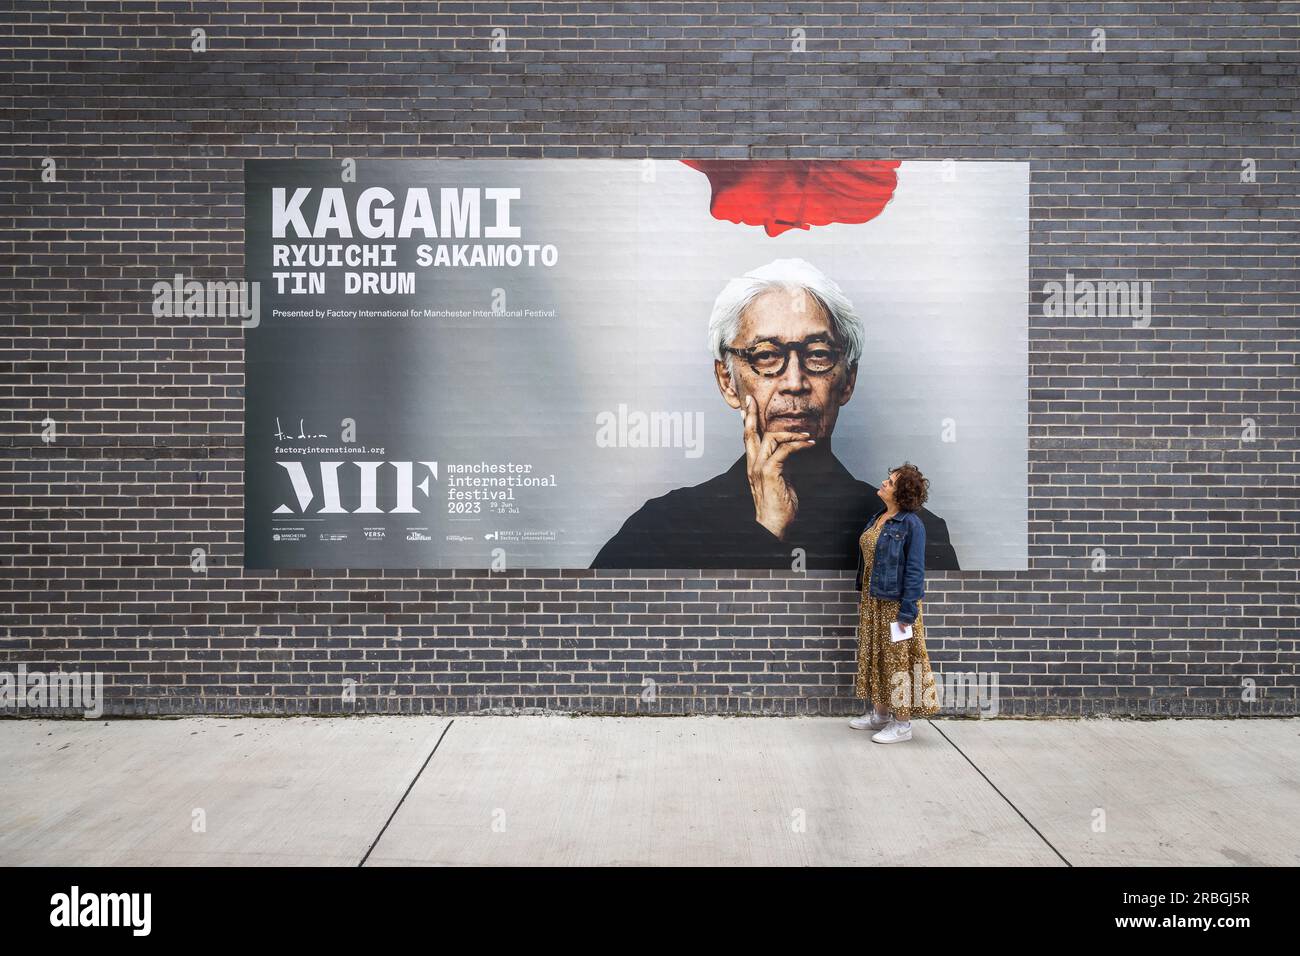 Affascinato dal genio di Ryuichi Sakamoto, un fan devoto guarda su un cartellone che promuove Kagami, un'esperienza di concerto virtuale rivoluzionaria. Foto Stock